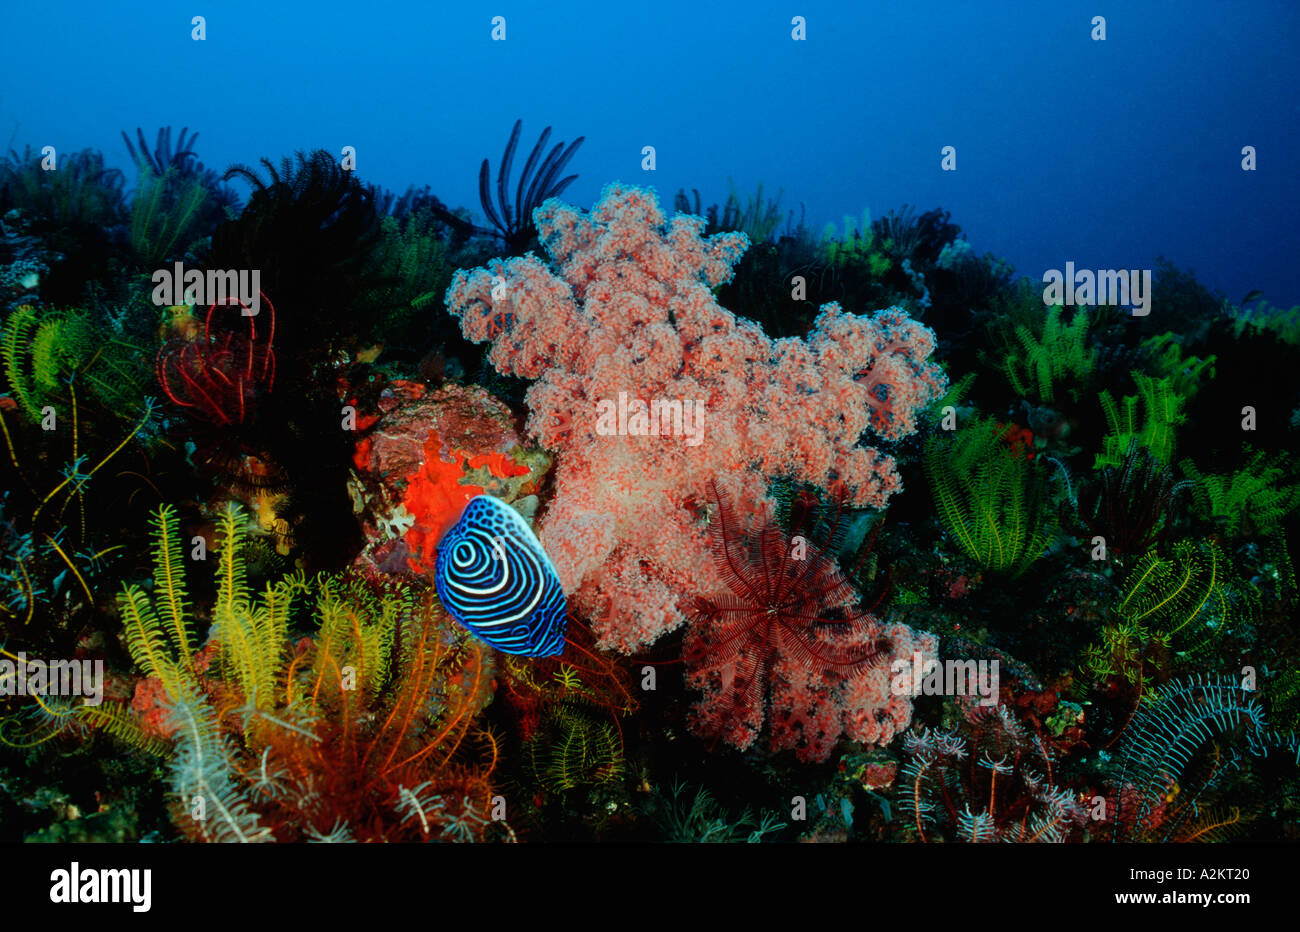 L'Empereur juvéniles de poissons-anges dans les récifs coralliens colorés, Pomacanthus imperator, komodo Indonésie océan Indien Banque D'Images